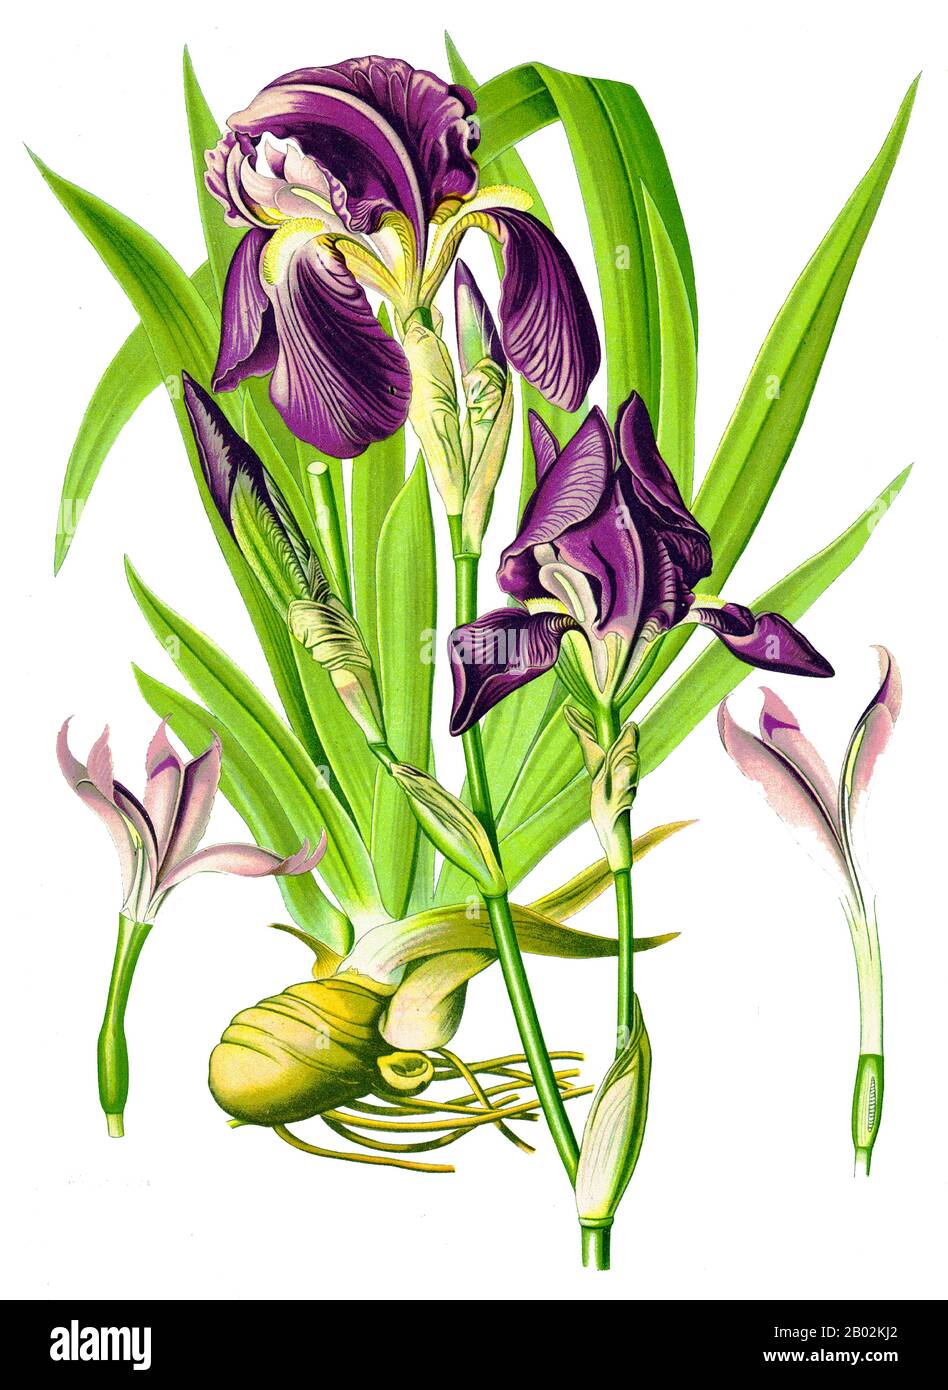 Iris Germanica wird bis zu 120 cm hoch und 30 cm breit. Die Wurzeln können bis zu 10 cm tief gehen. Es ist eine rhizomatöse mehrjährige, die im April bis Juni blüht. Das Heben, Teilen und Neupflanzen der Rhizome ist am besten, wenn die Blüte abgeschlossen ist, da die Pflanze die neuen Triebe wächst, die im folgenden Jahr blühen werden. Hunderte von Hybriden existieren, die jede Farbe von strahlendem Schwarz bis funkelndem Weiß darstellen. Die einzige Farbe, die wirklich fehlt, ist helles Scharlach. Stockfoto